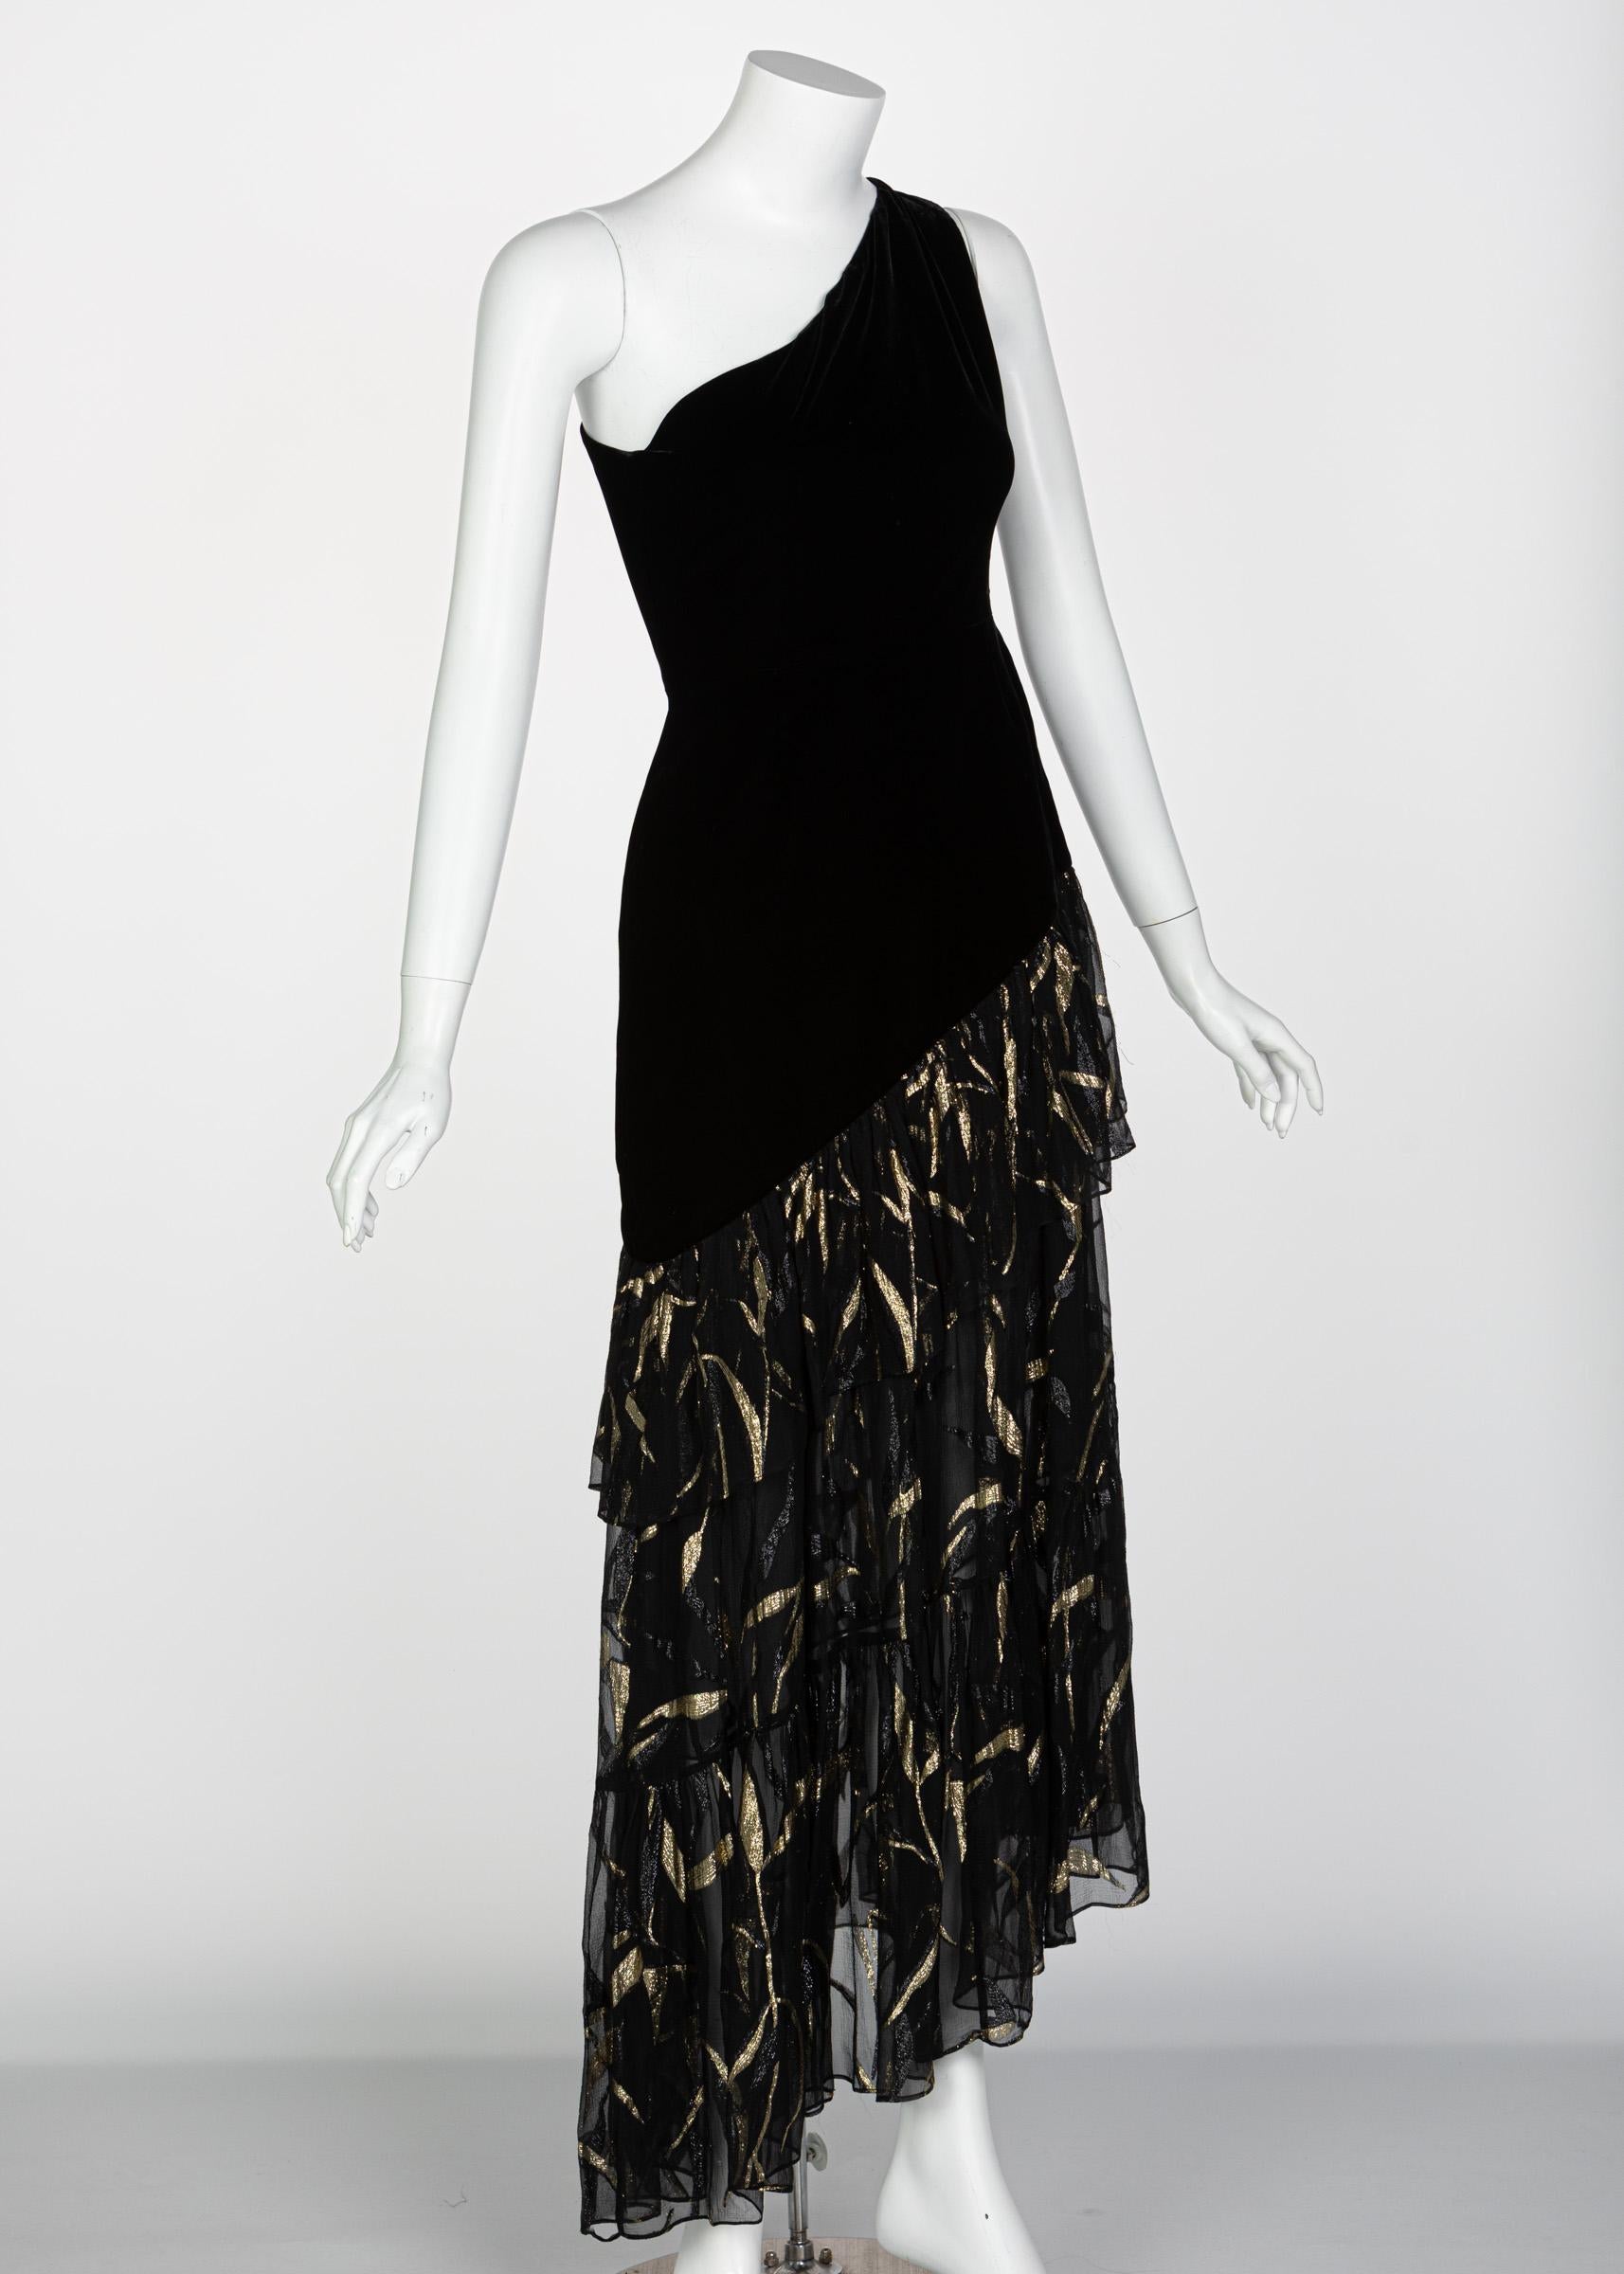 Women's Saint Laurent YSL One shoulder Black Velvet Metallic Layered Dress, 1980s For Sale